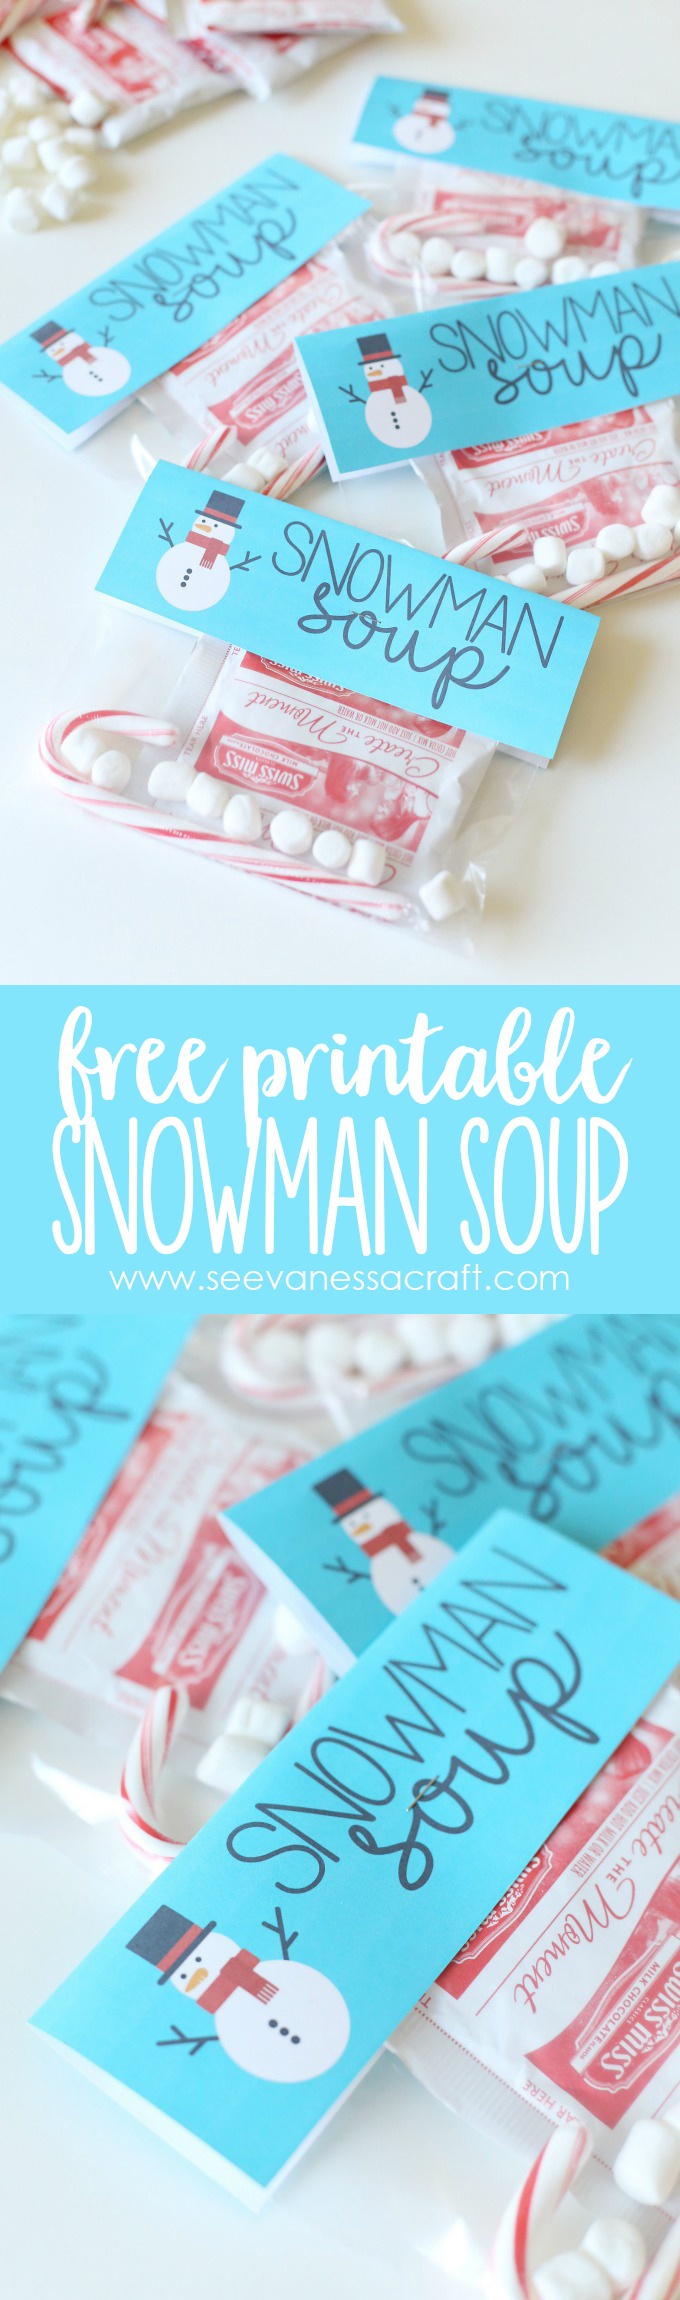 Christmas: Snowman Soup Printable Bag Topper - See Vanessa Craft - Snowman Soup Free Printable